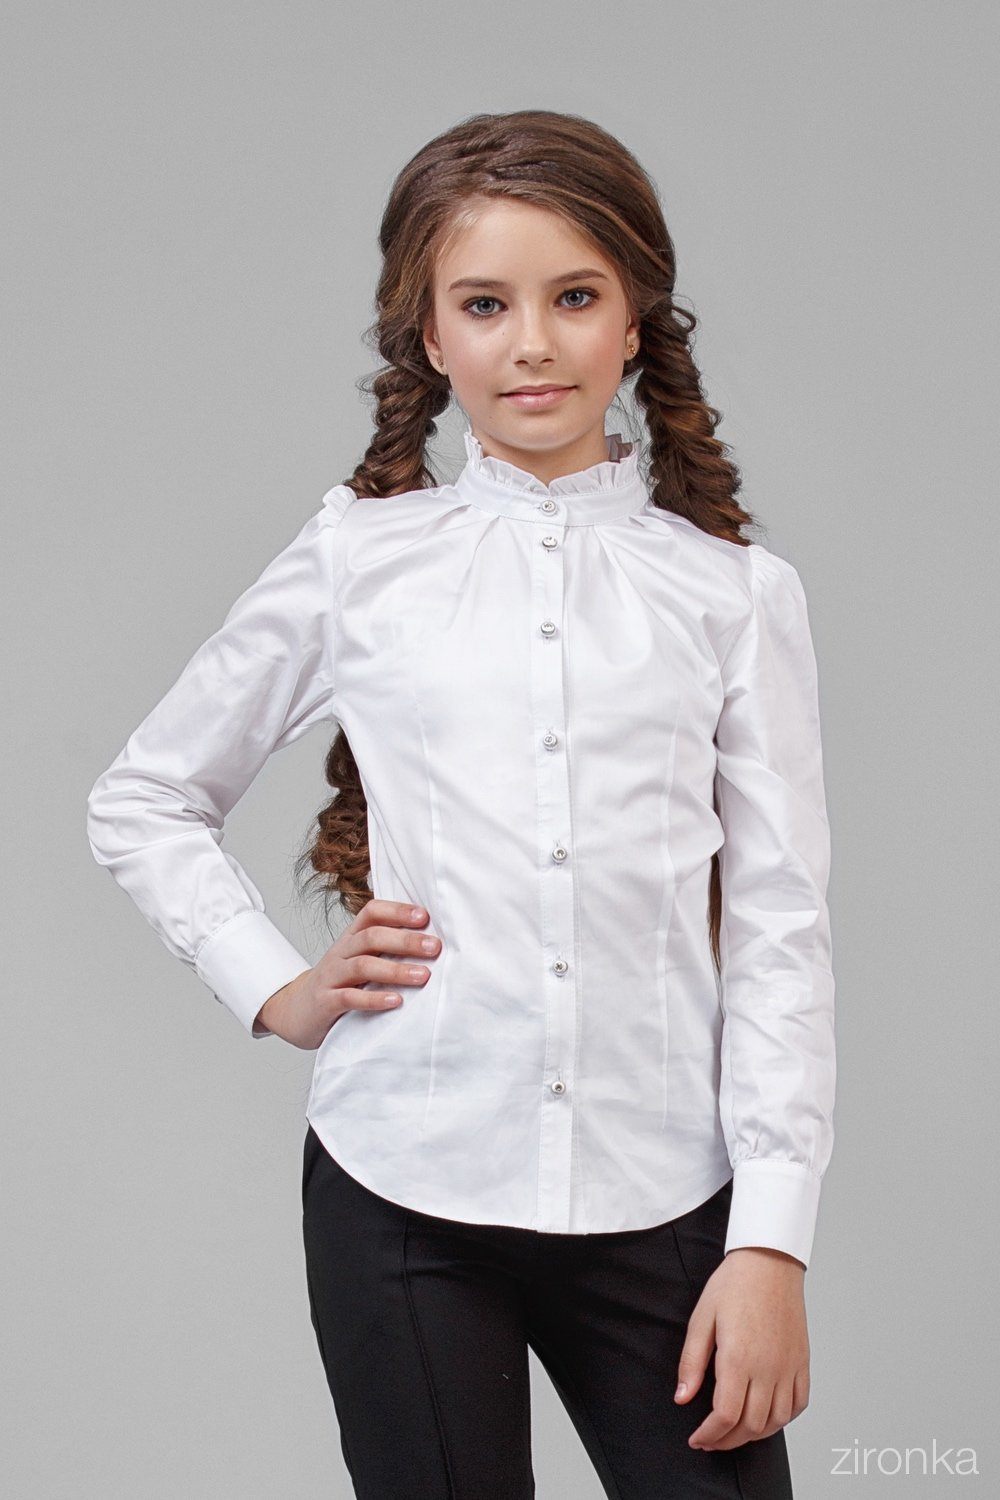 Блузка Школьная для девочек